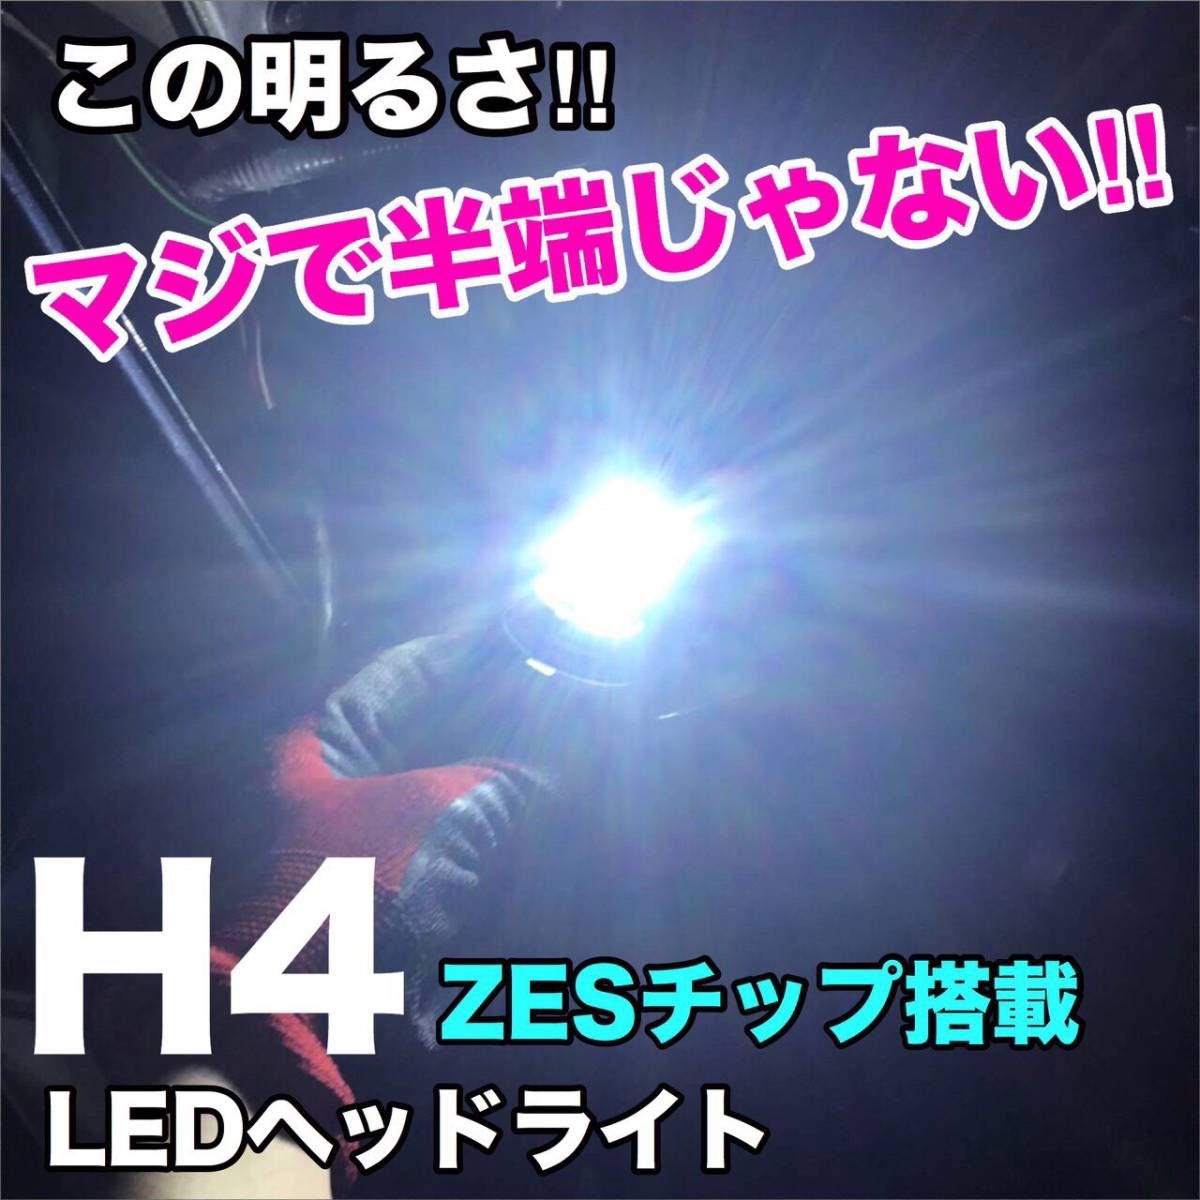 ZC/ZD スイフト LED ルームランプ ウェッジ球セット T10 COB全面発光 バックランプ 車内灯 リバースランプ ヘッドライト